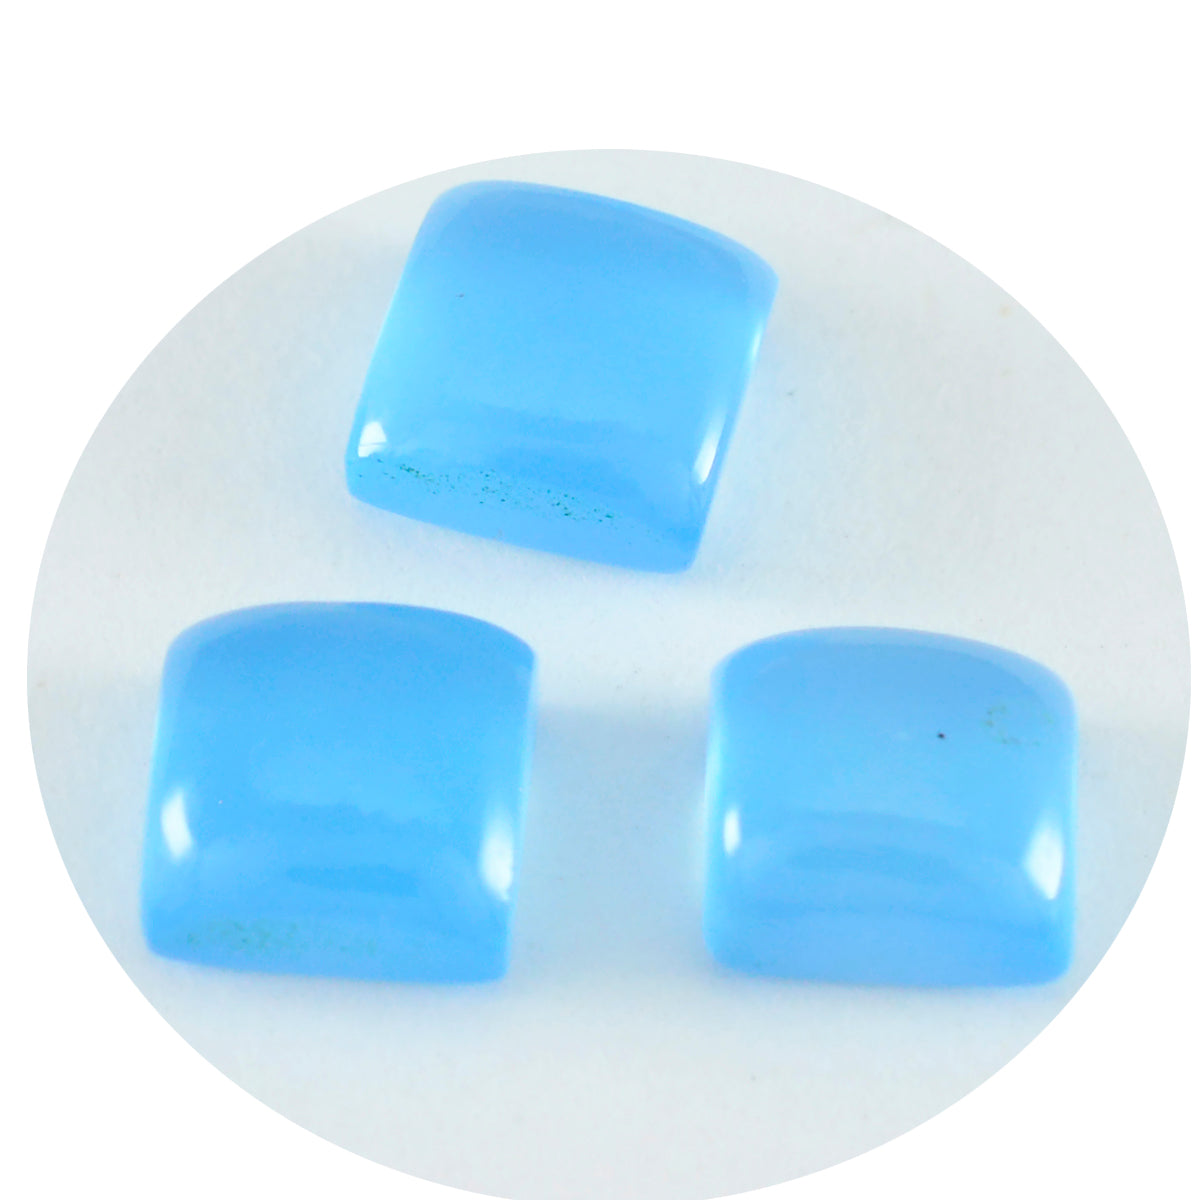 Riyogems 1PC blauwe chalcedoon cabochon 9x9 mm vierkante vorm verbazingwekkende kwaliteit edelsteen